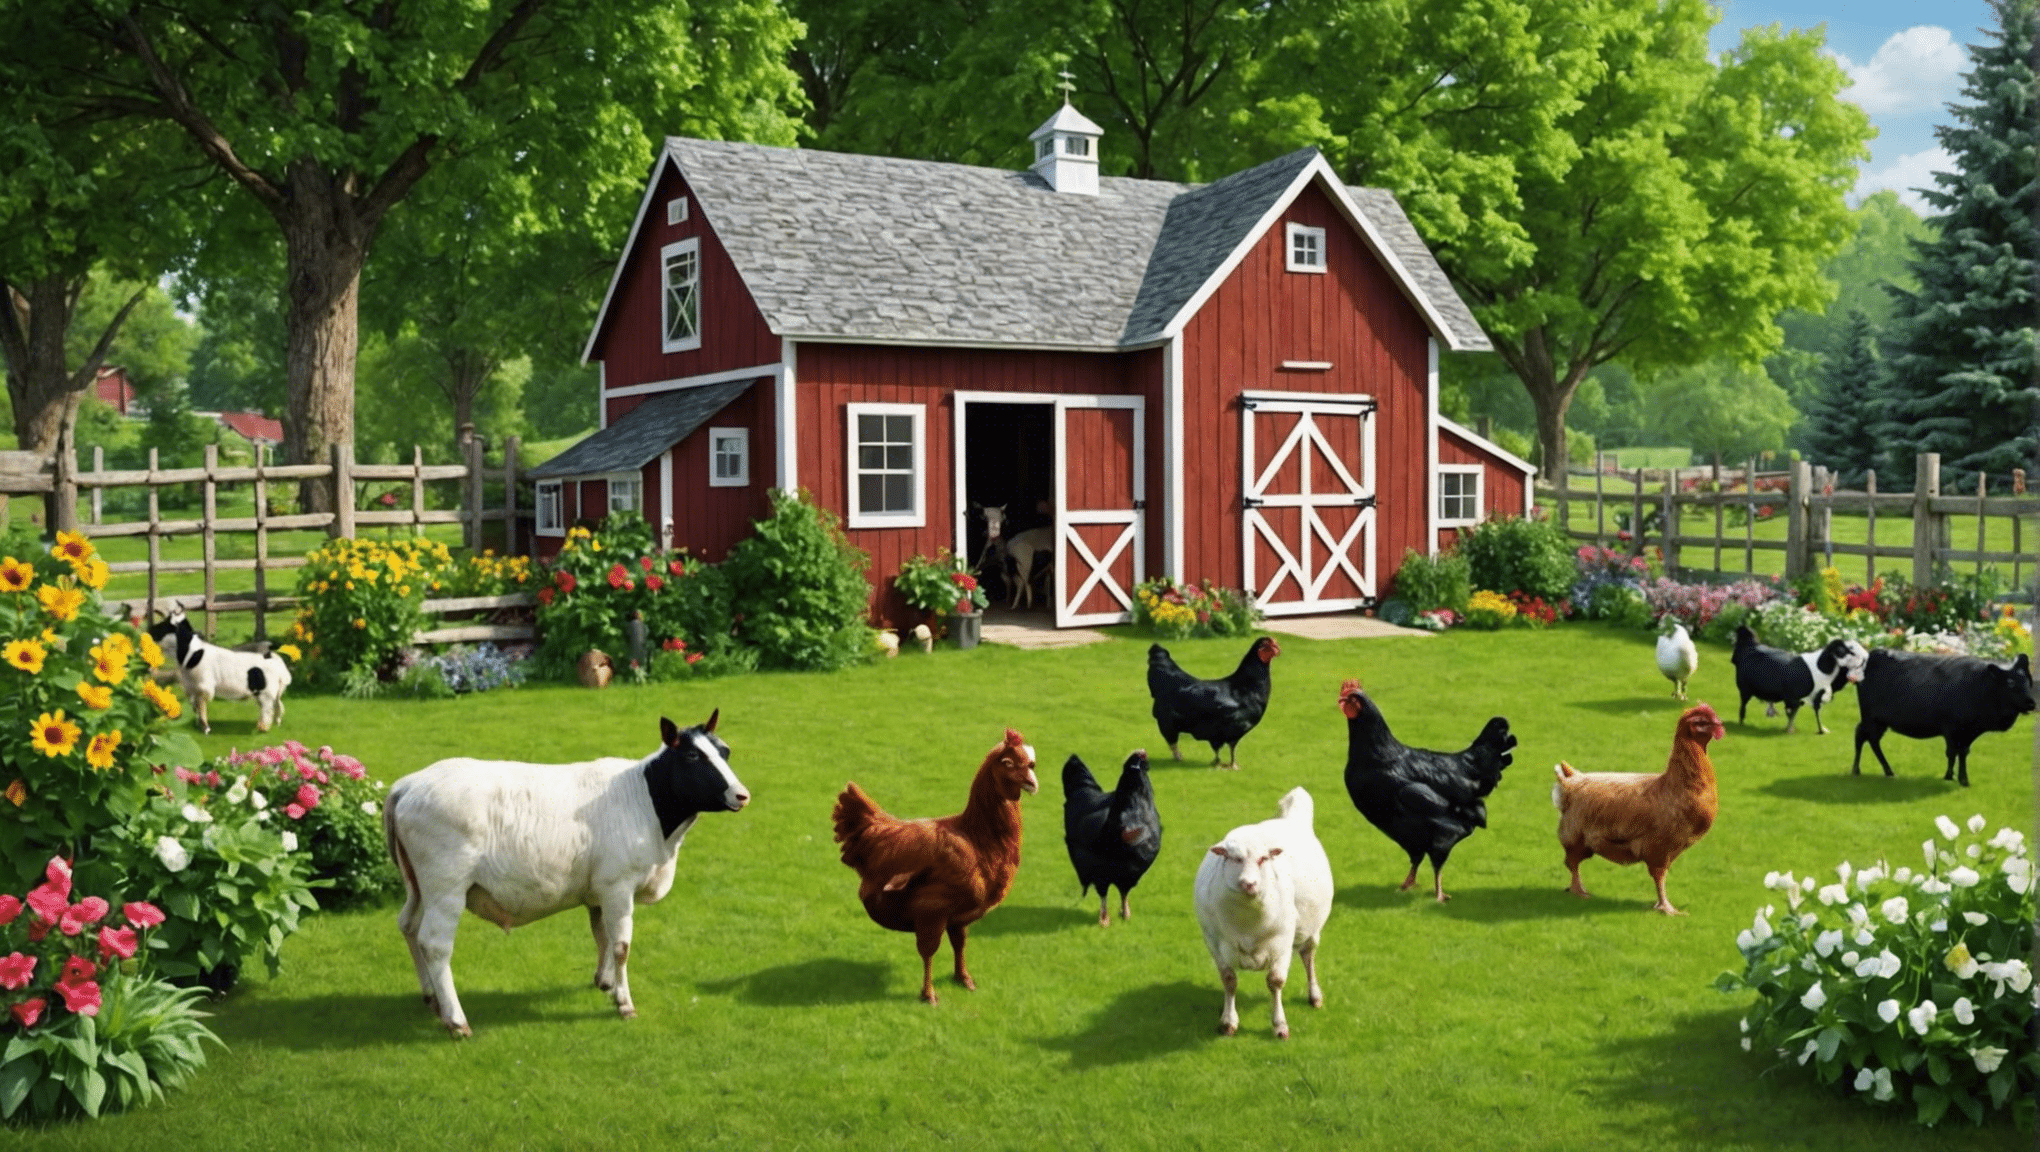 Entdecken Sie die Vorteile der Haltung von Nutztieren im Garten für Ihr Zuhause und Ihre Familie. Informieren Sie sich über die Aufzucht, Pflege und den Spaß an Nutztieren im Garten.